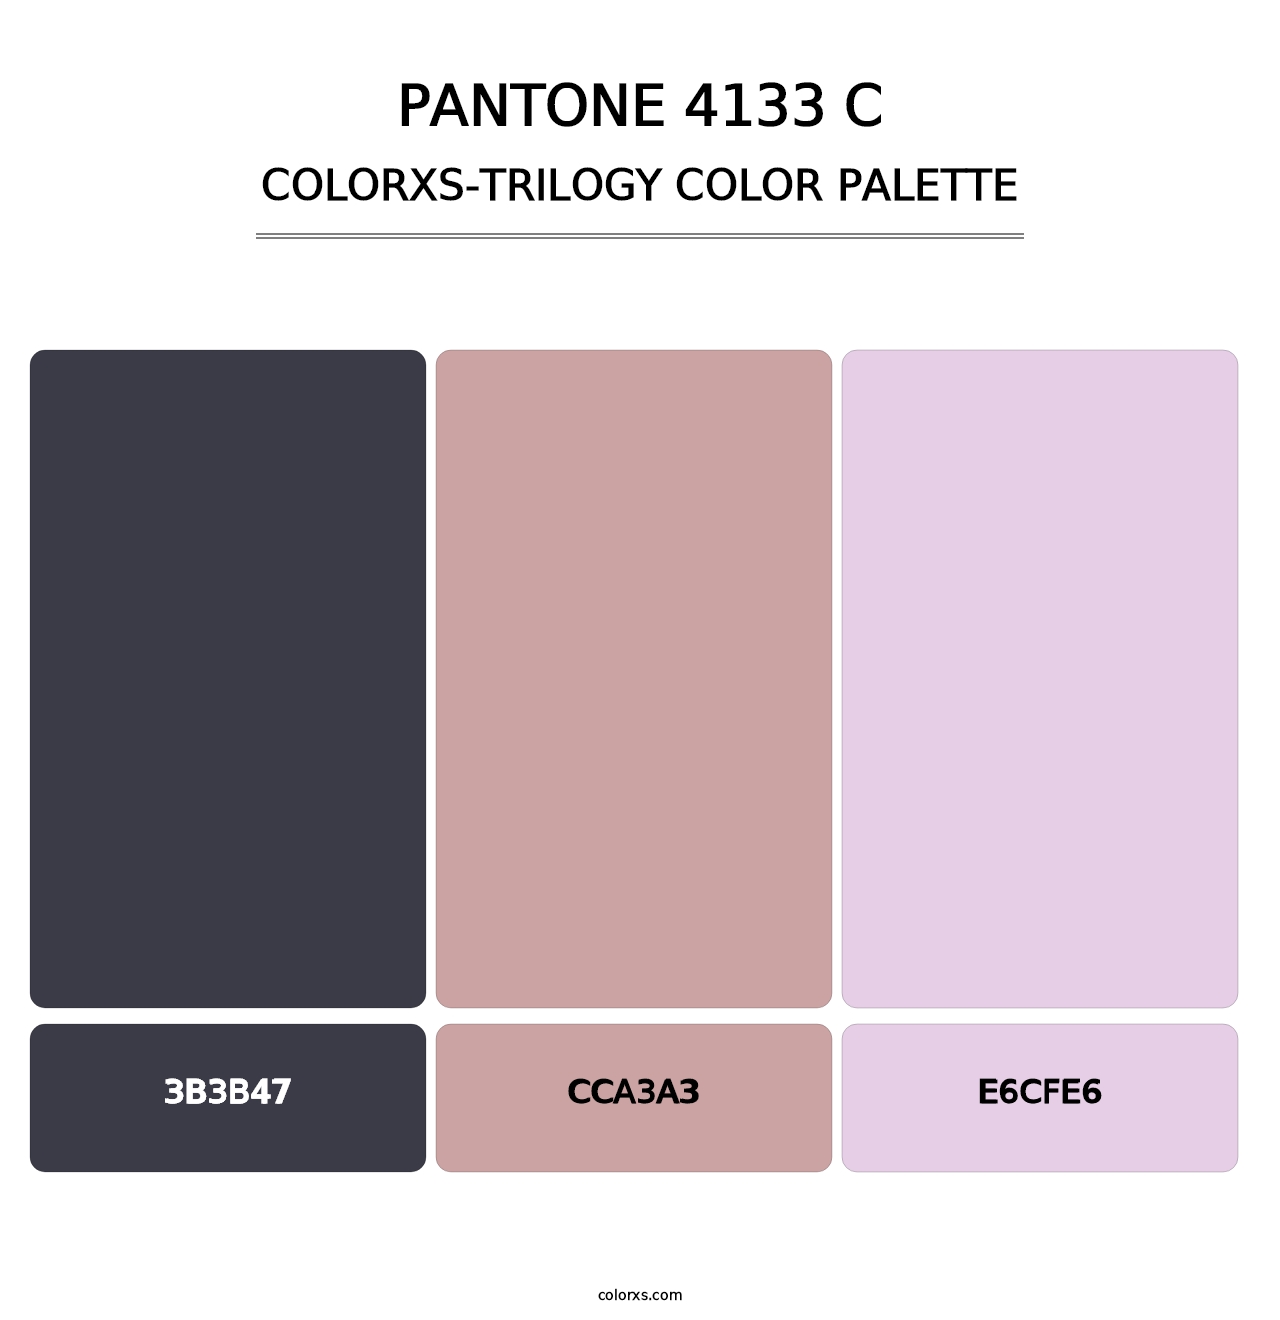 PANTONE 4133 C - Colorxs Trilogy Palette